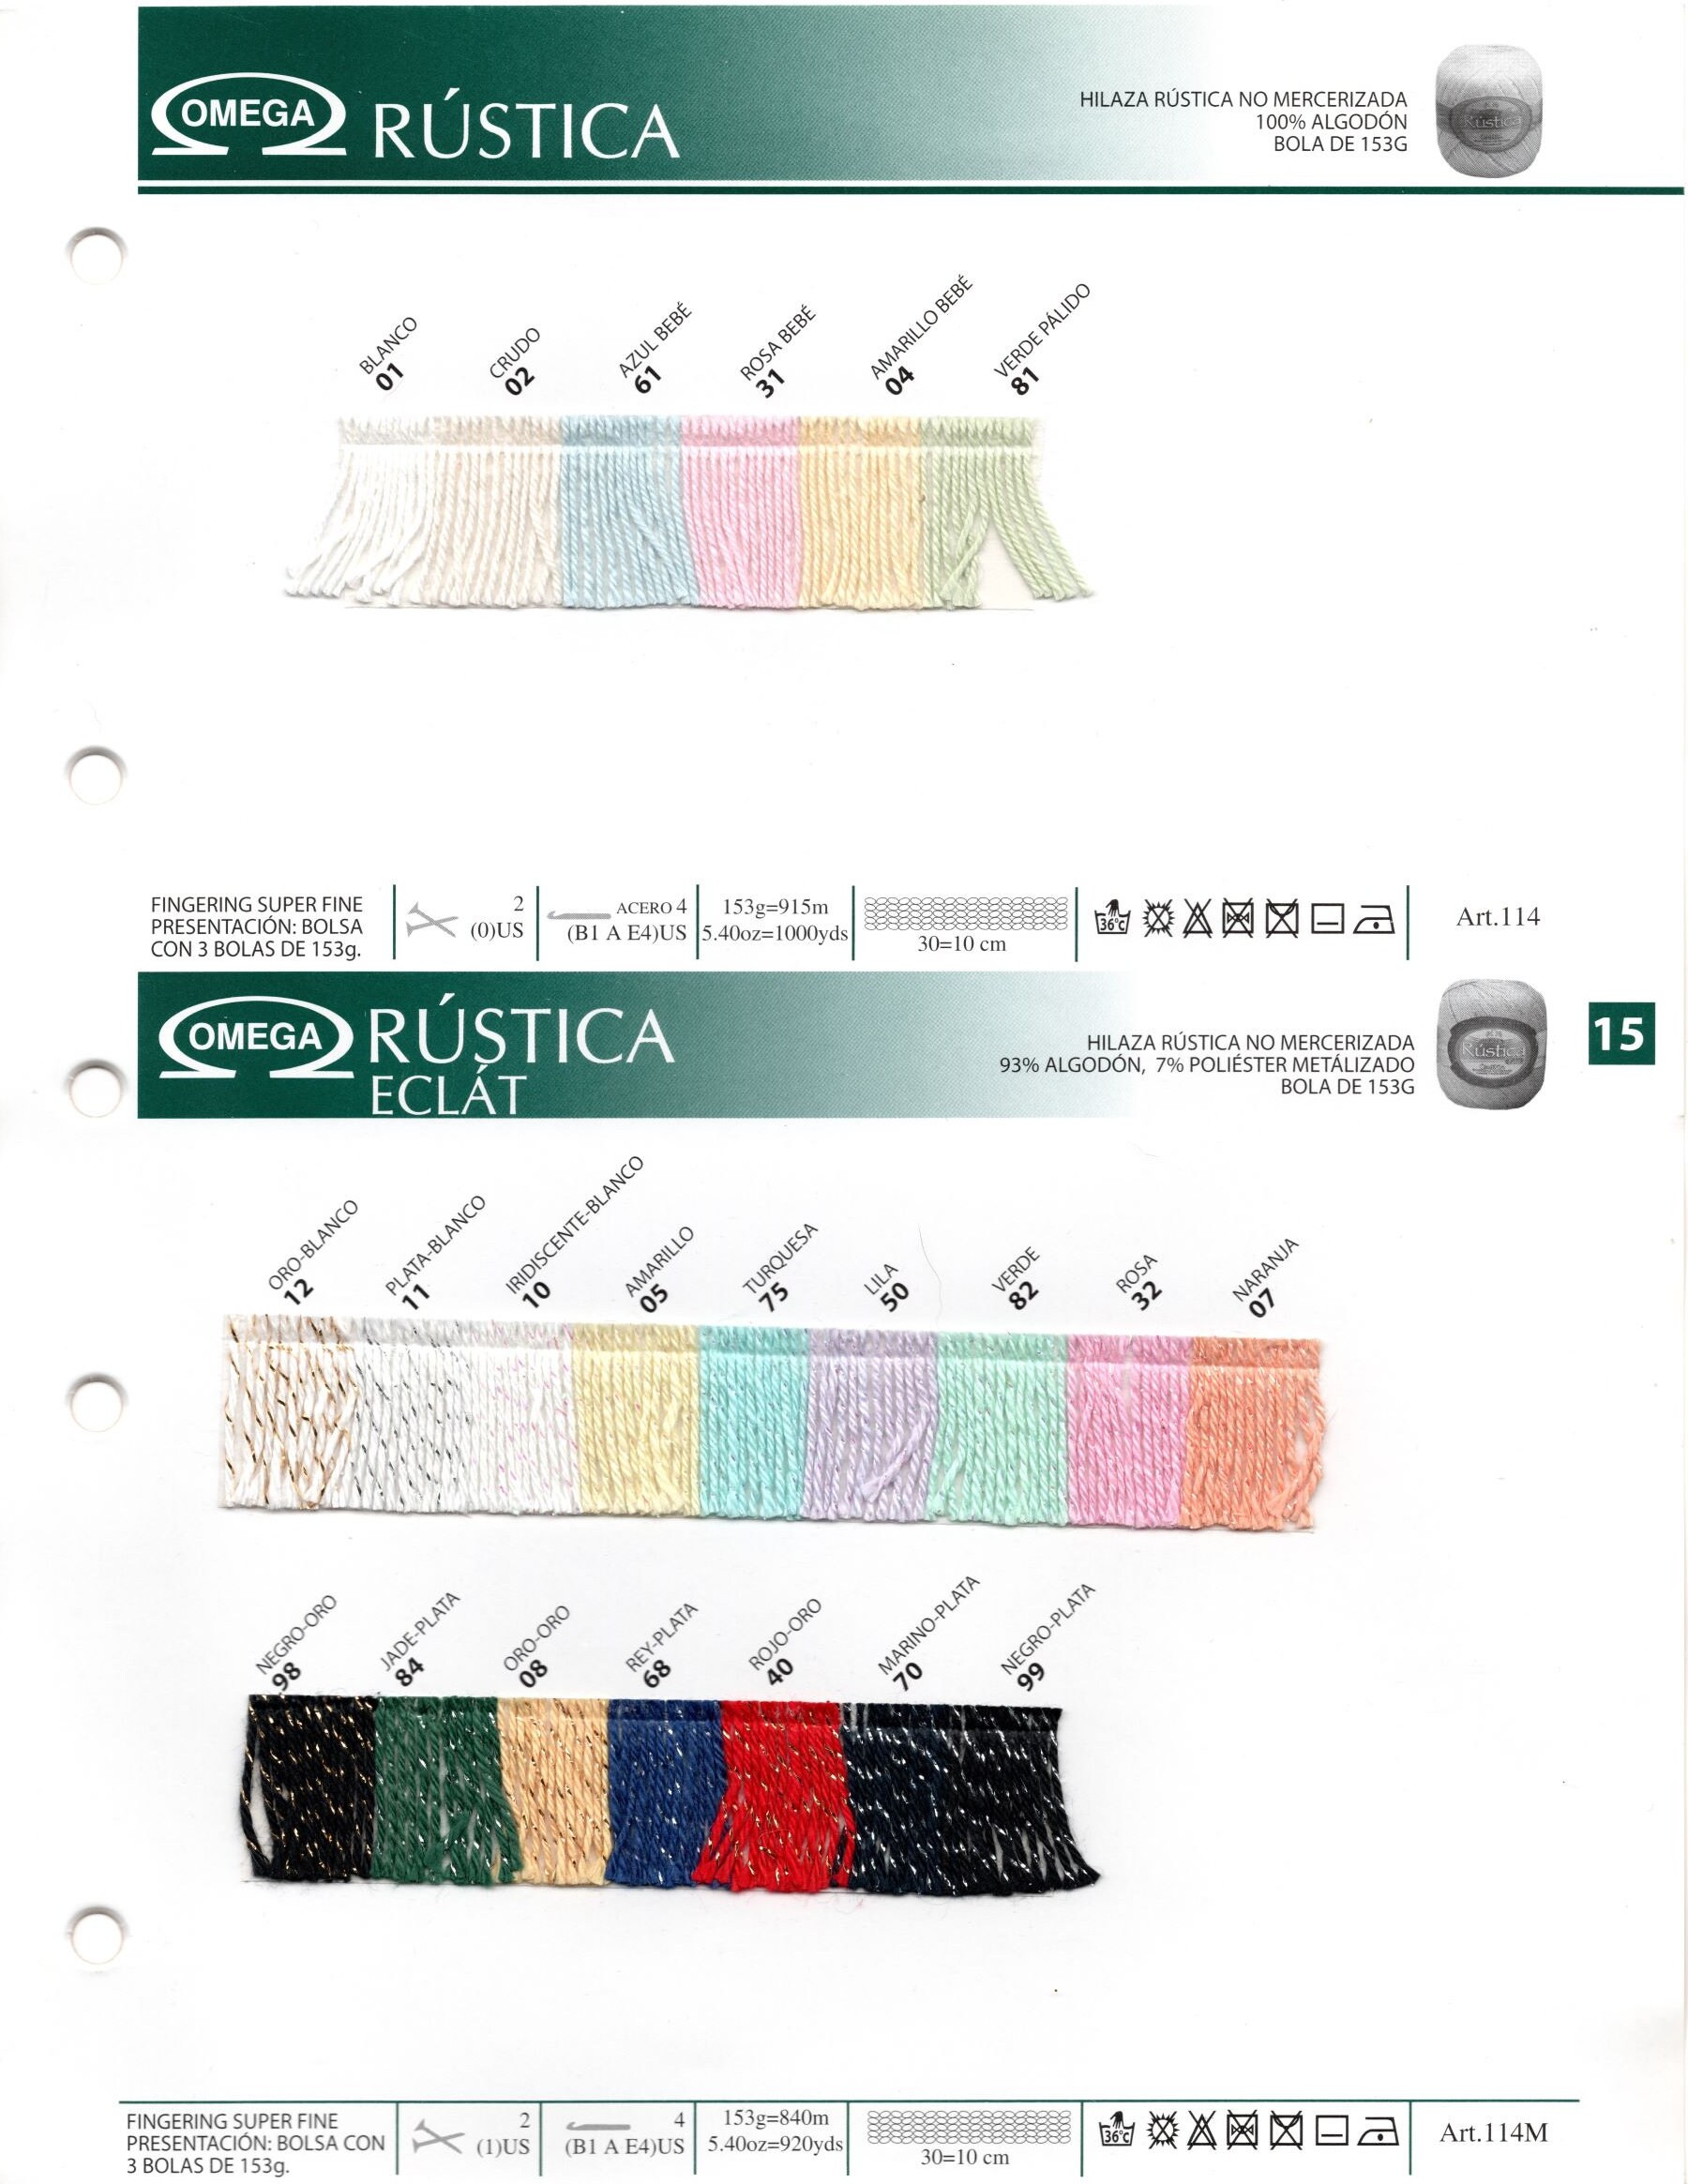 Omega Crochet 20 – ErikaCreativa